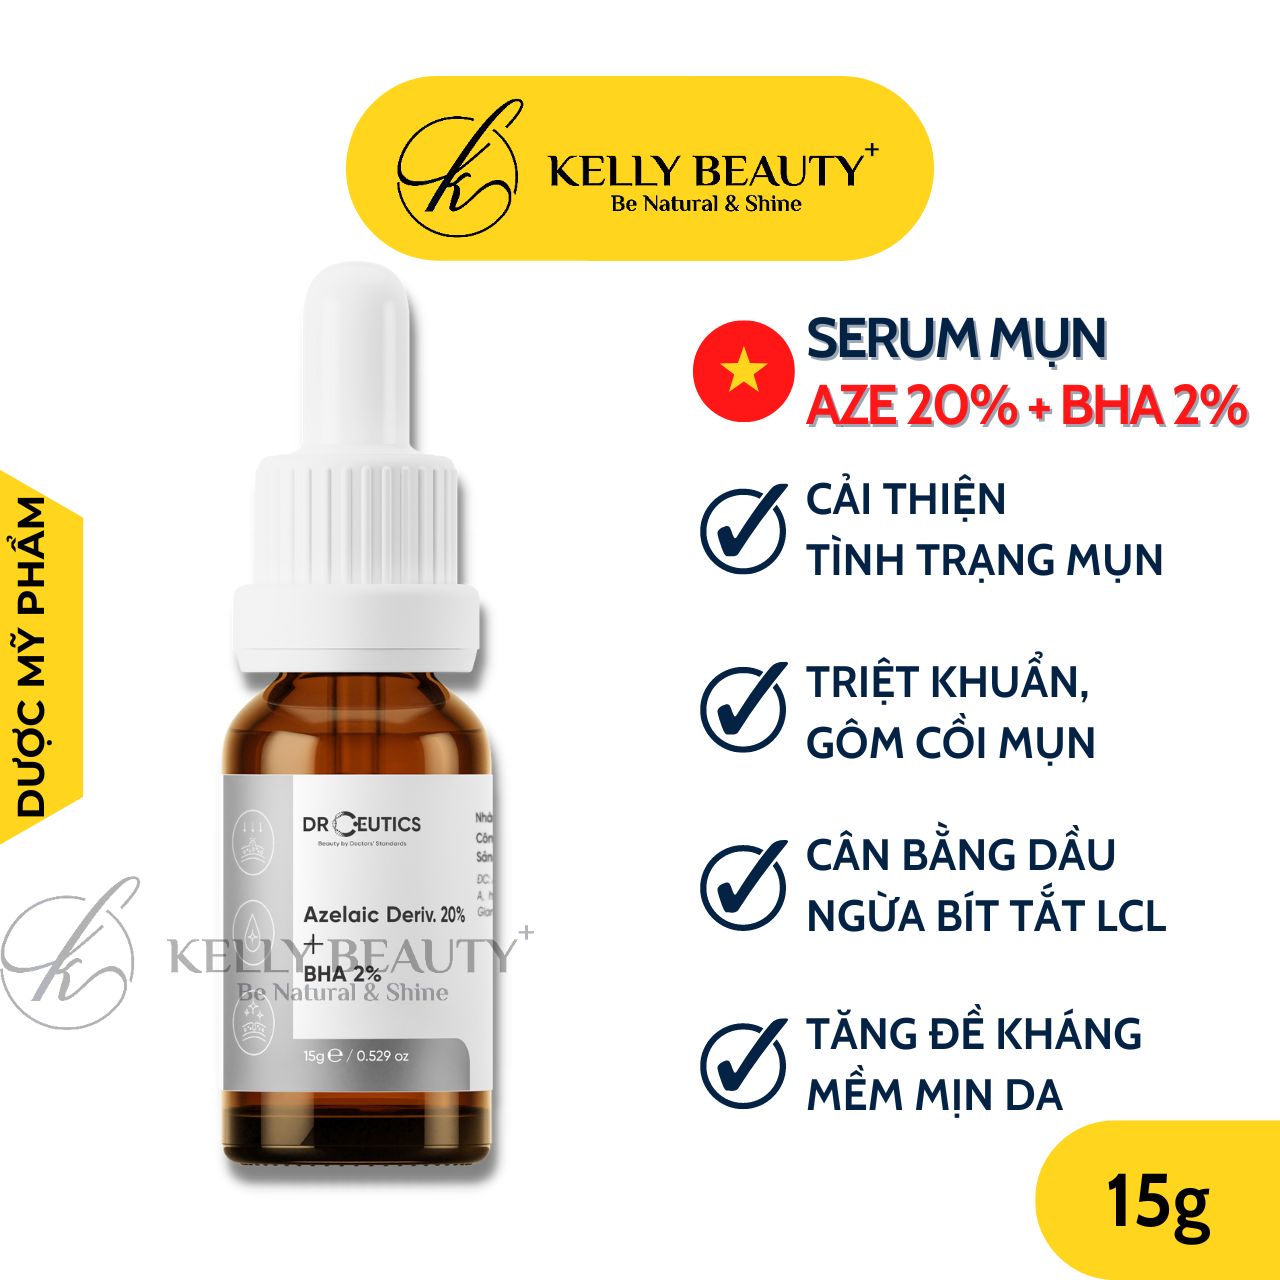 Serum Mụn DrCeutics Azelaic Deriv 20% + BHA 2% - Giảm Mụn Mờ Thâm; Thoáng Lỗ Chân Lông | Kelly Beauty